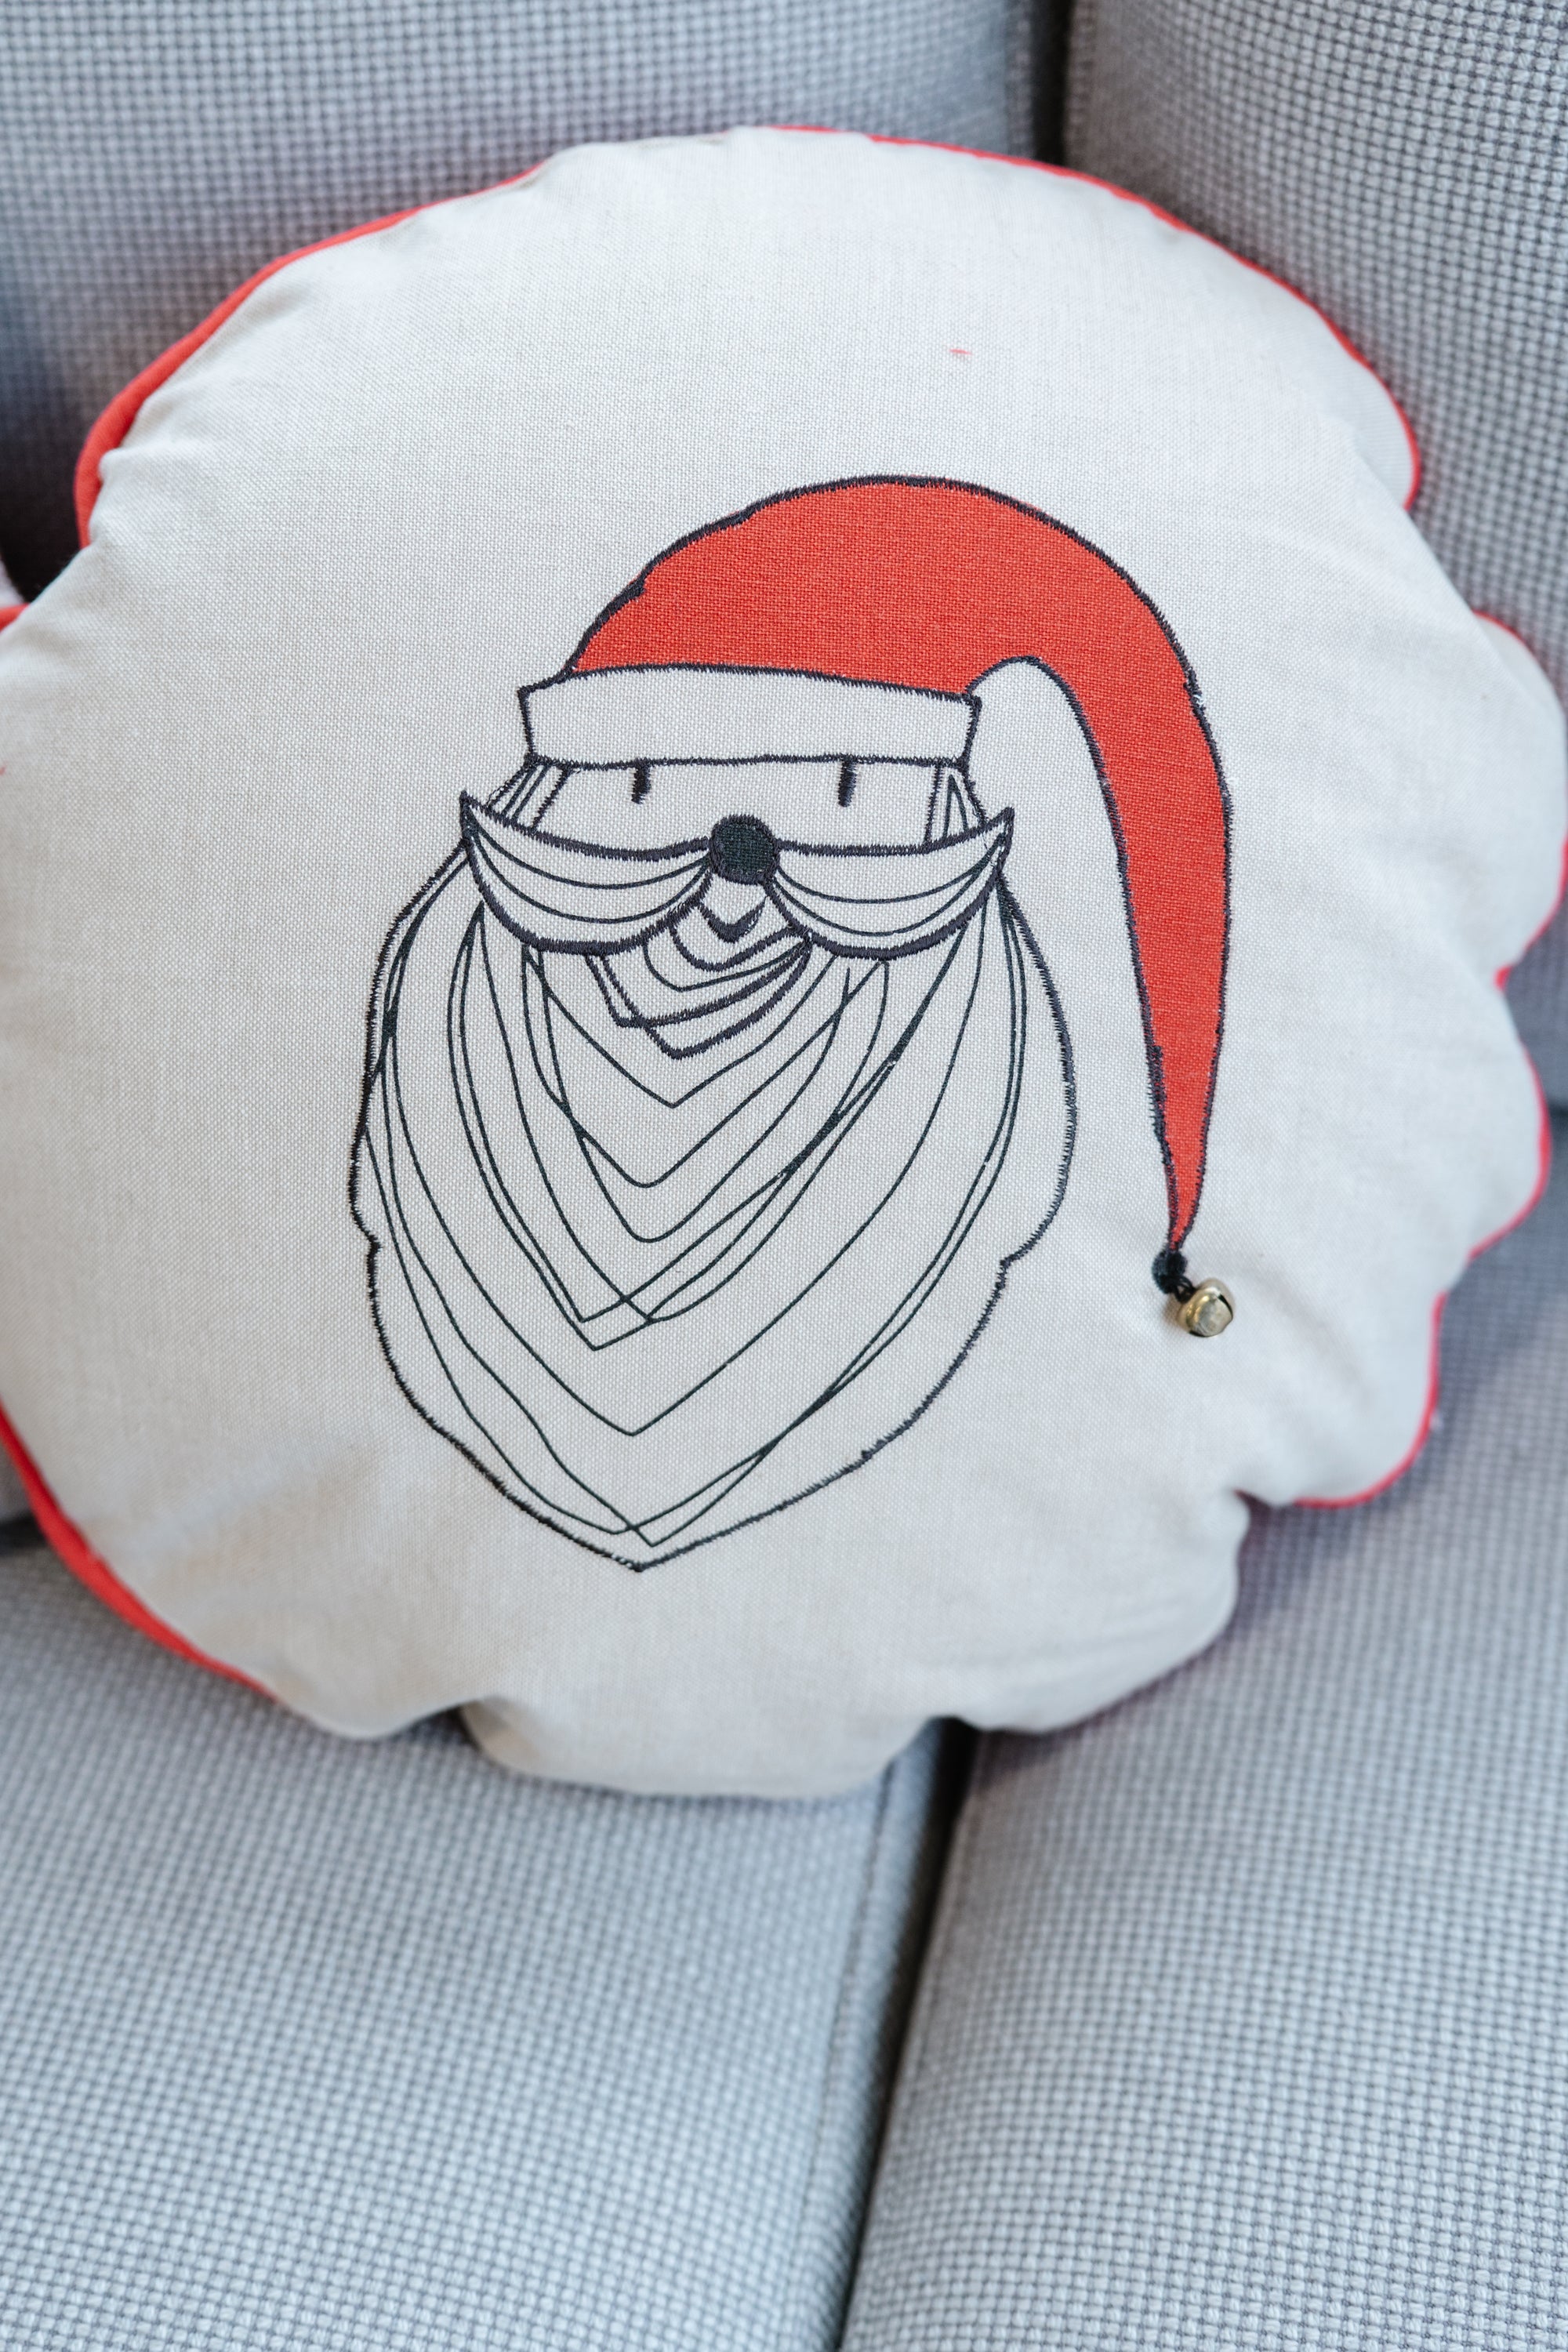 The Round Santa Claus Pillow